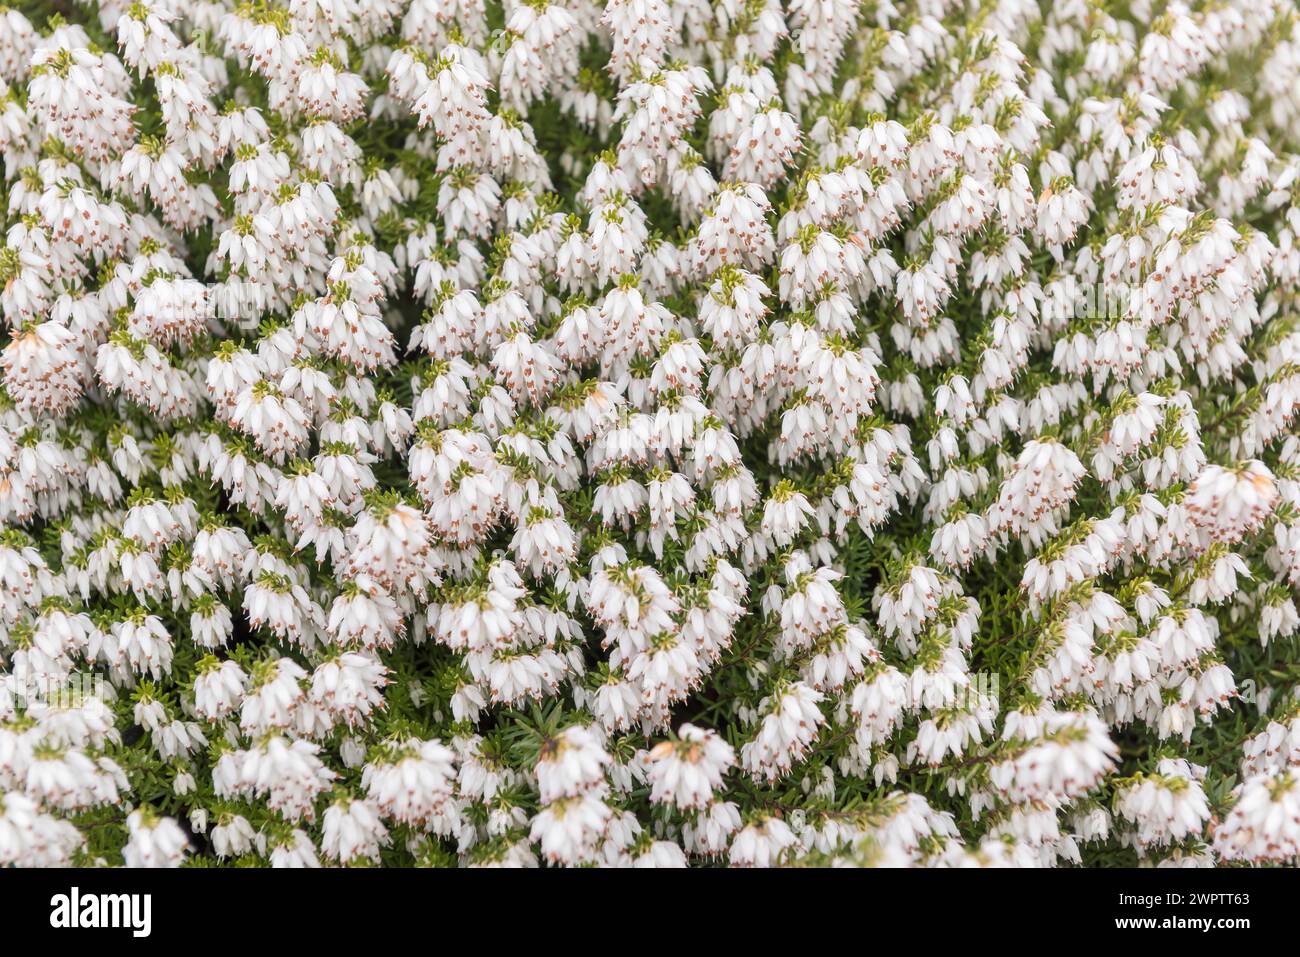 Snow heather (Erica carnea 'Snow Queen'), Cambridge Botanical Garden, Germany Stock Photo